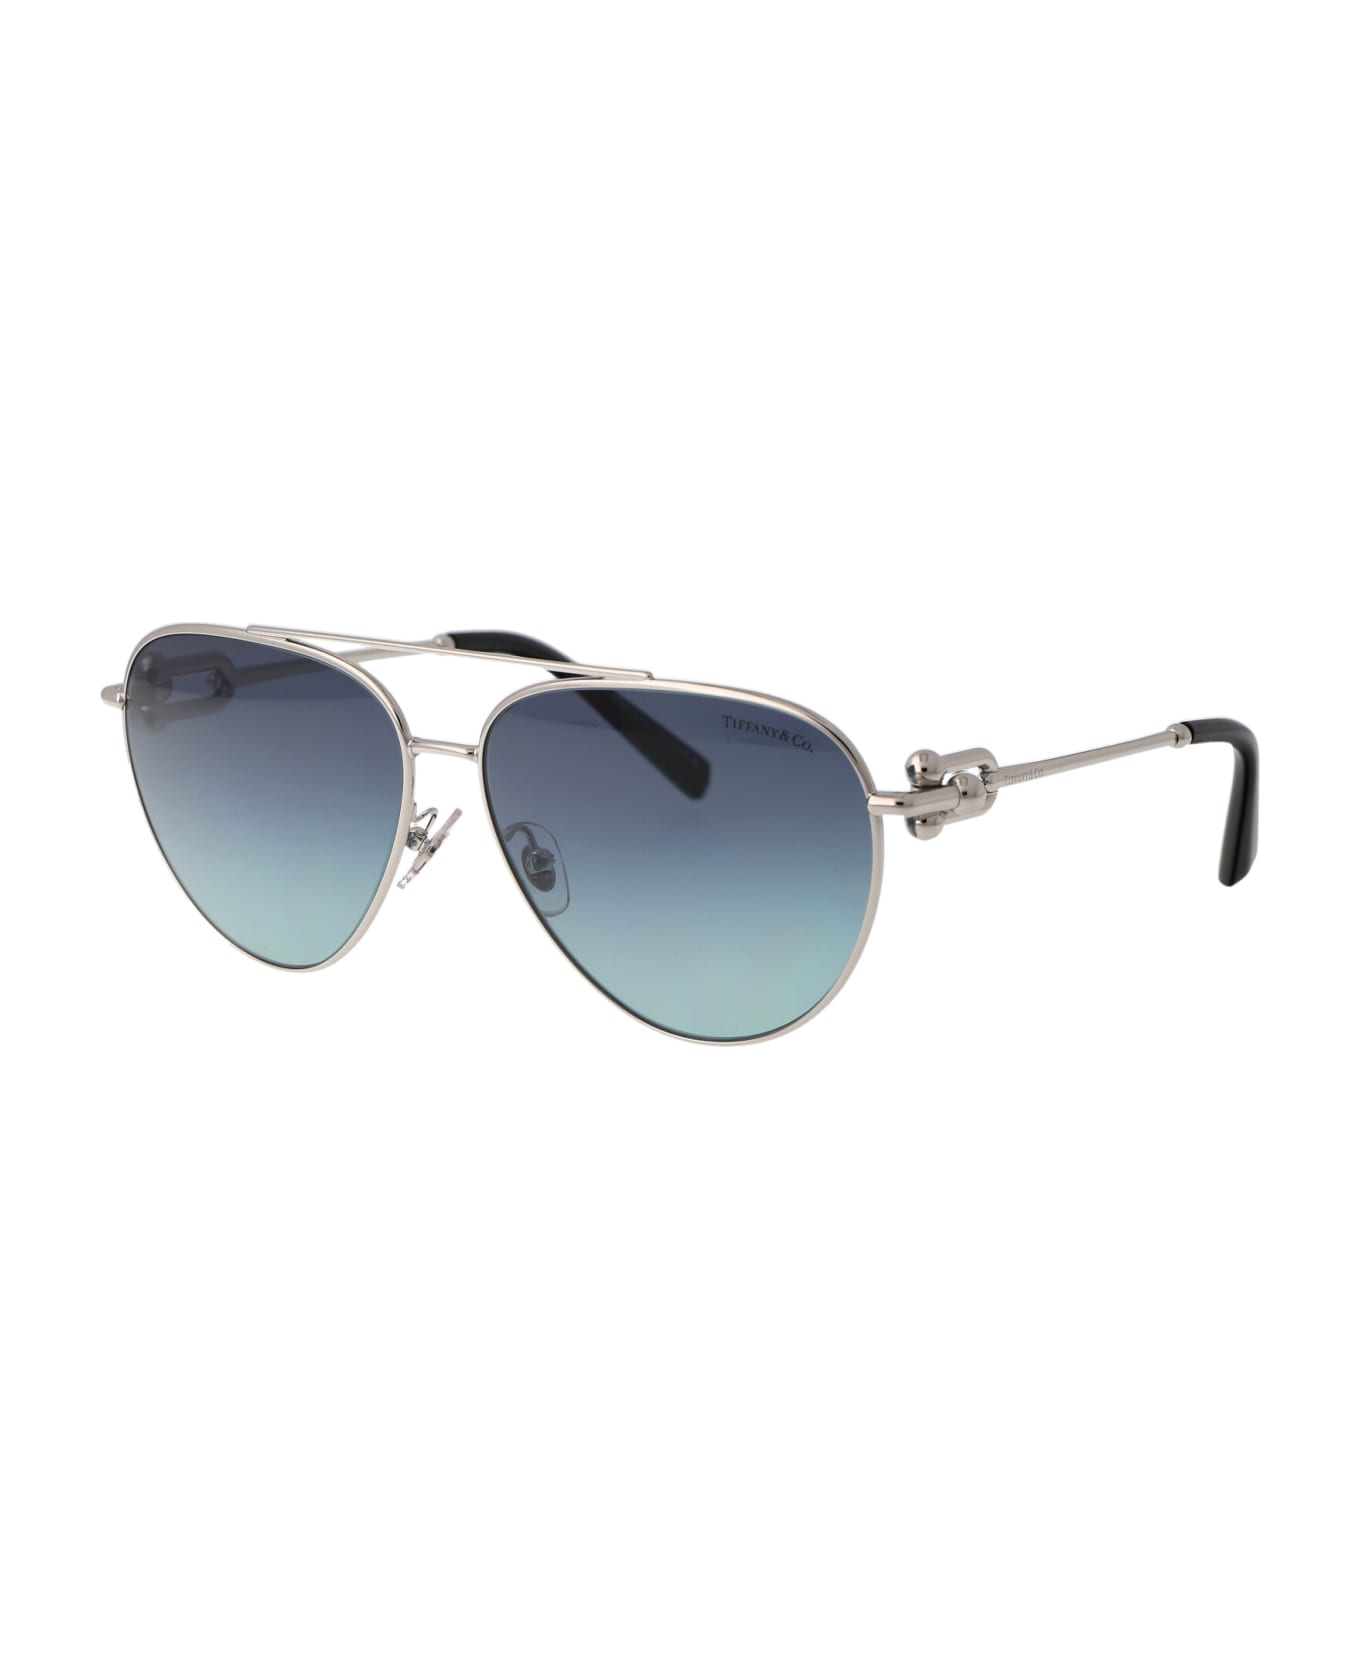 Tiffany & Co. 0tf3092 Sunglasses - 60019S Silver